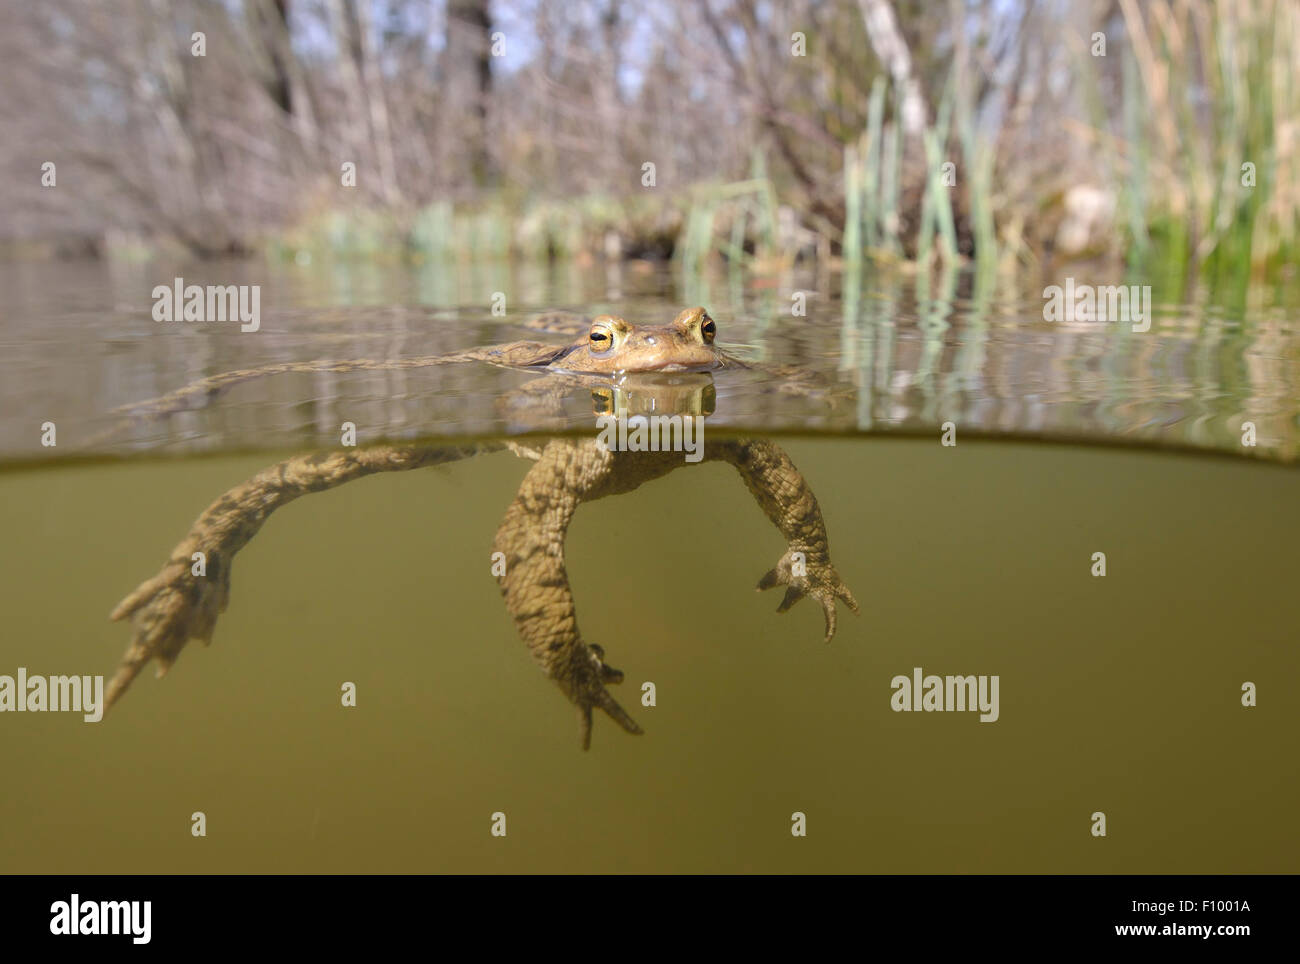 Crapaud commun (Bufo bufo) masculin flottant à la surface d'un lac, de la forêt de Thuringe, Allemagne Banque D'Images